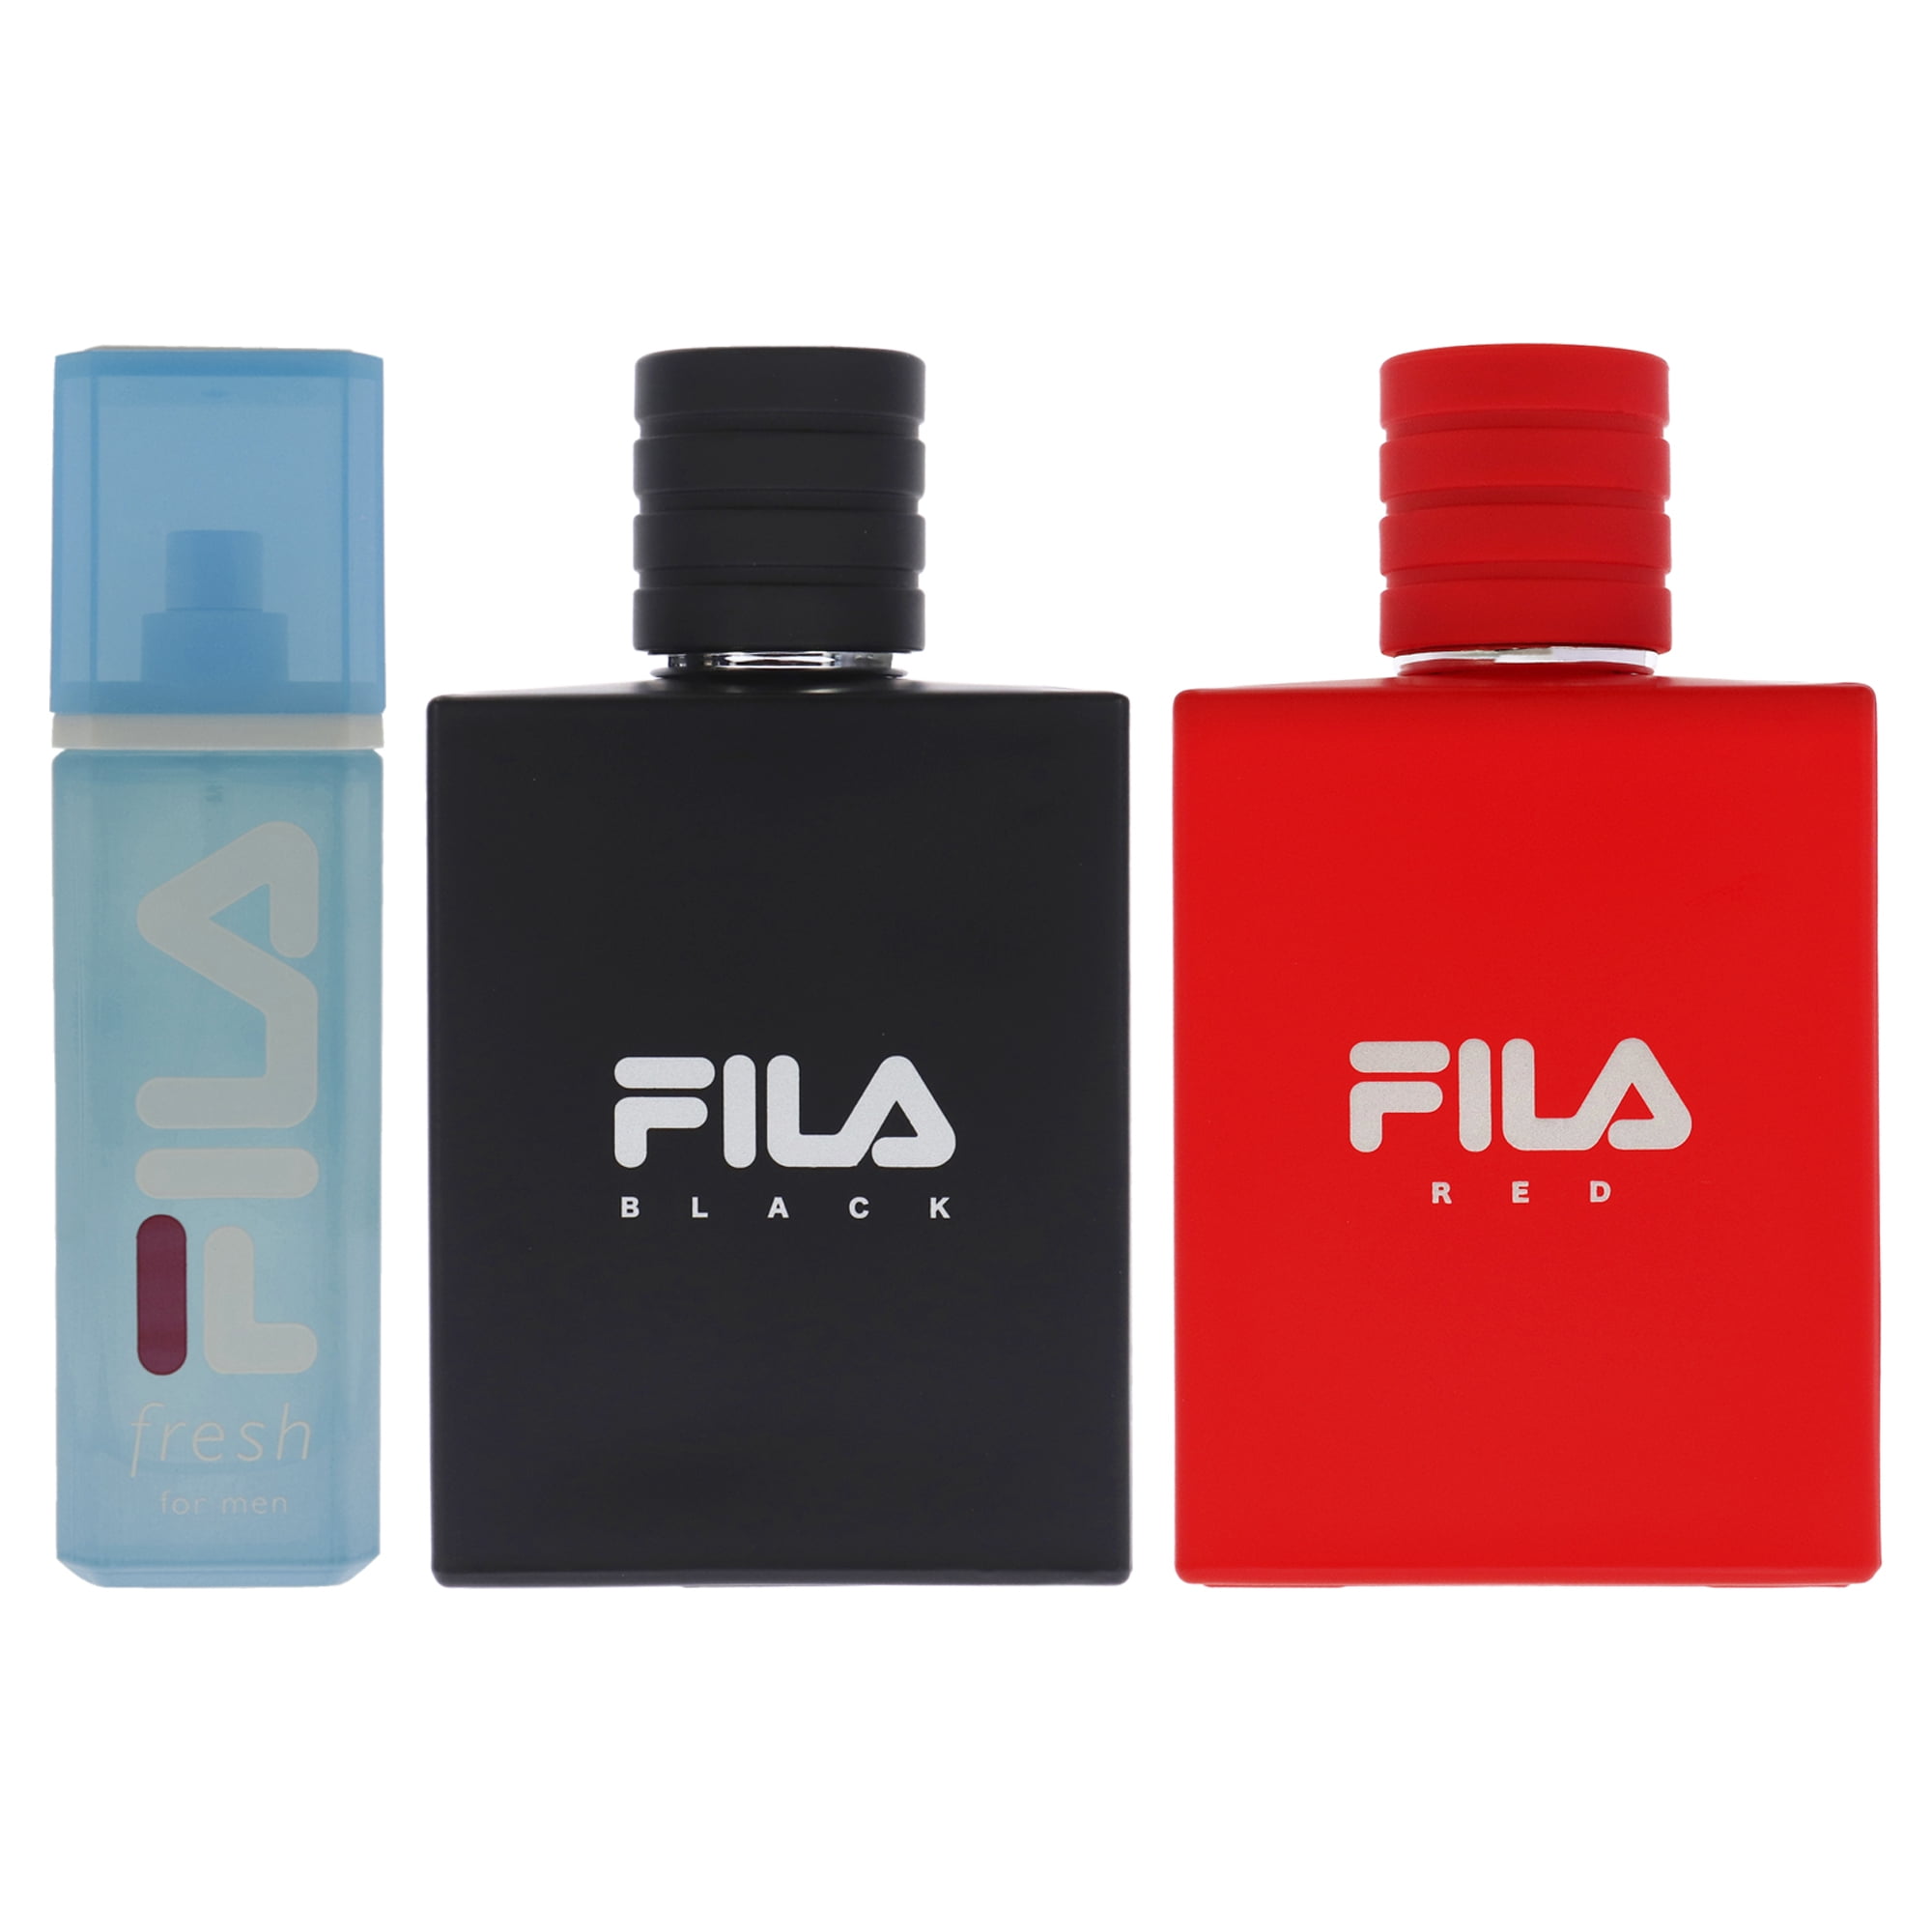 Fila Fresh, Black, Red 3.4 oz Cologne for Men, Mens Body Spray Gift Set 3pk